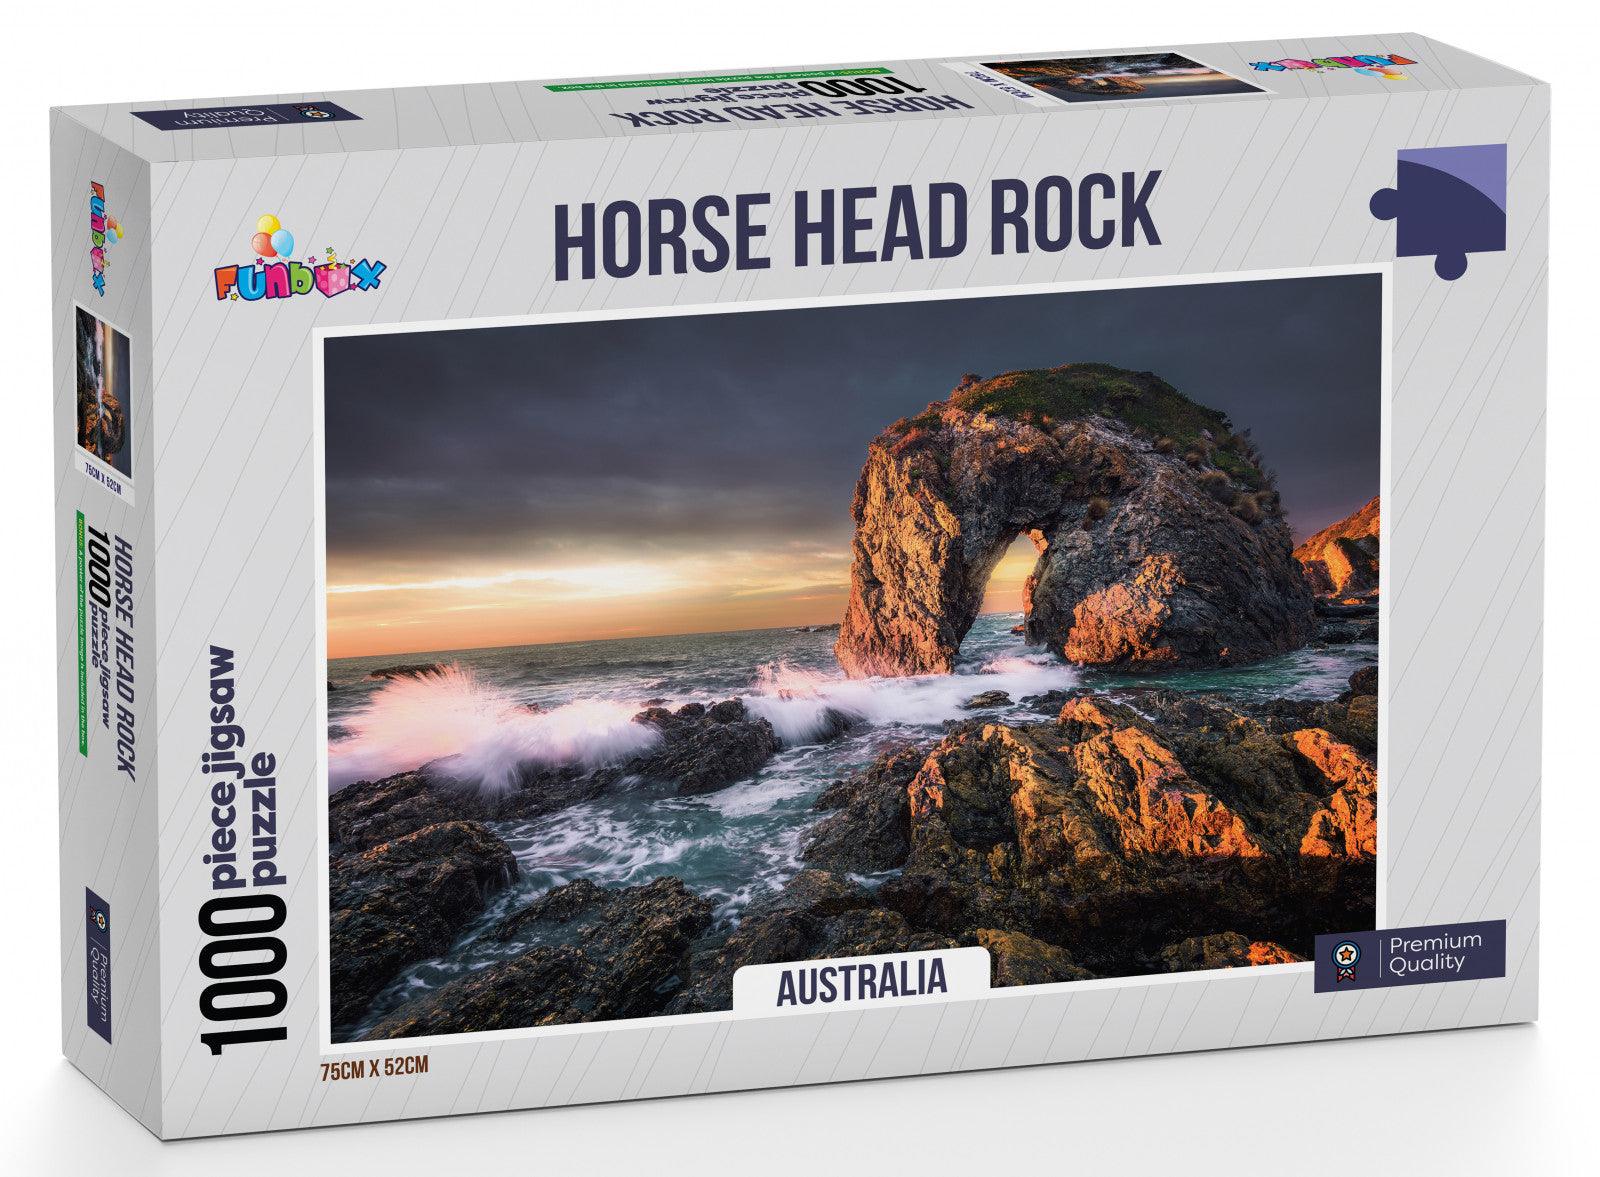 VR-84521 Funbox Puzzle Horse Head Rock Australia Puzzle 1,000 pieces - Funbox - Titan Pop Culture